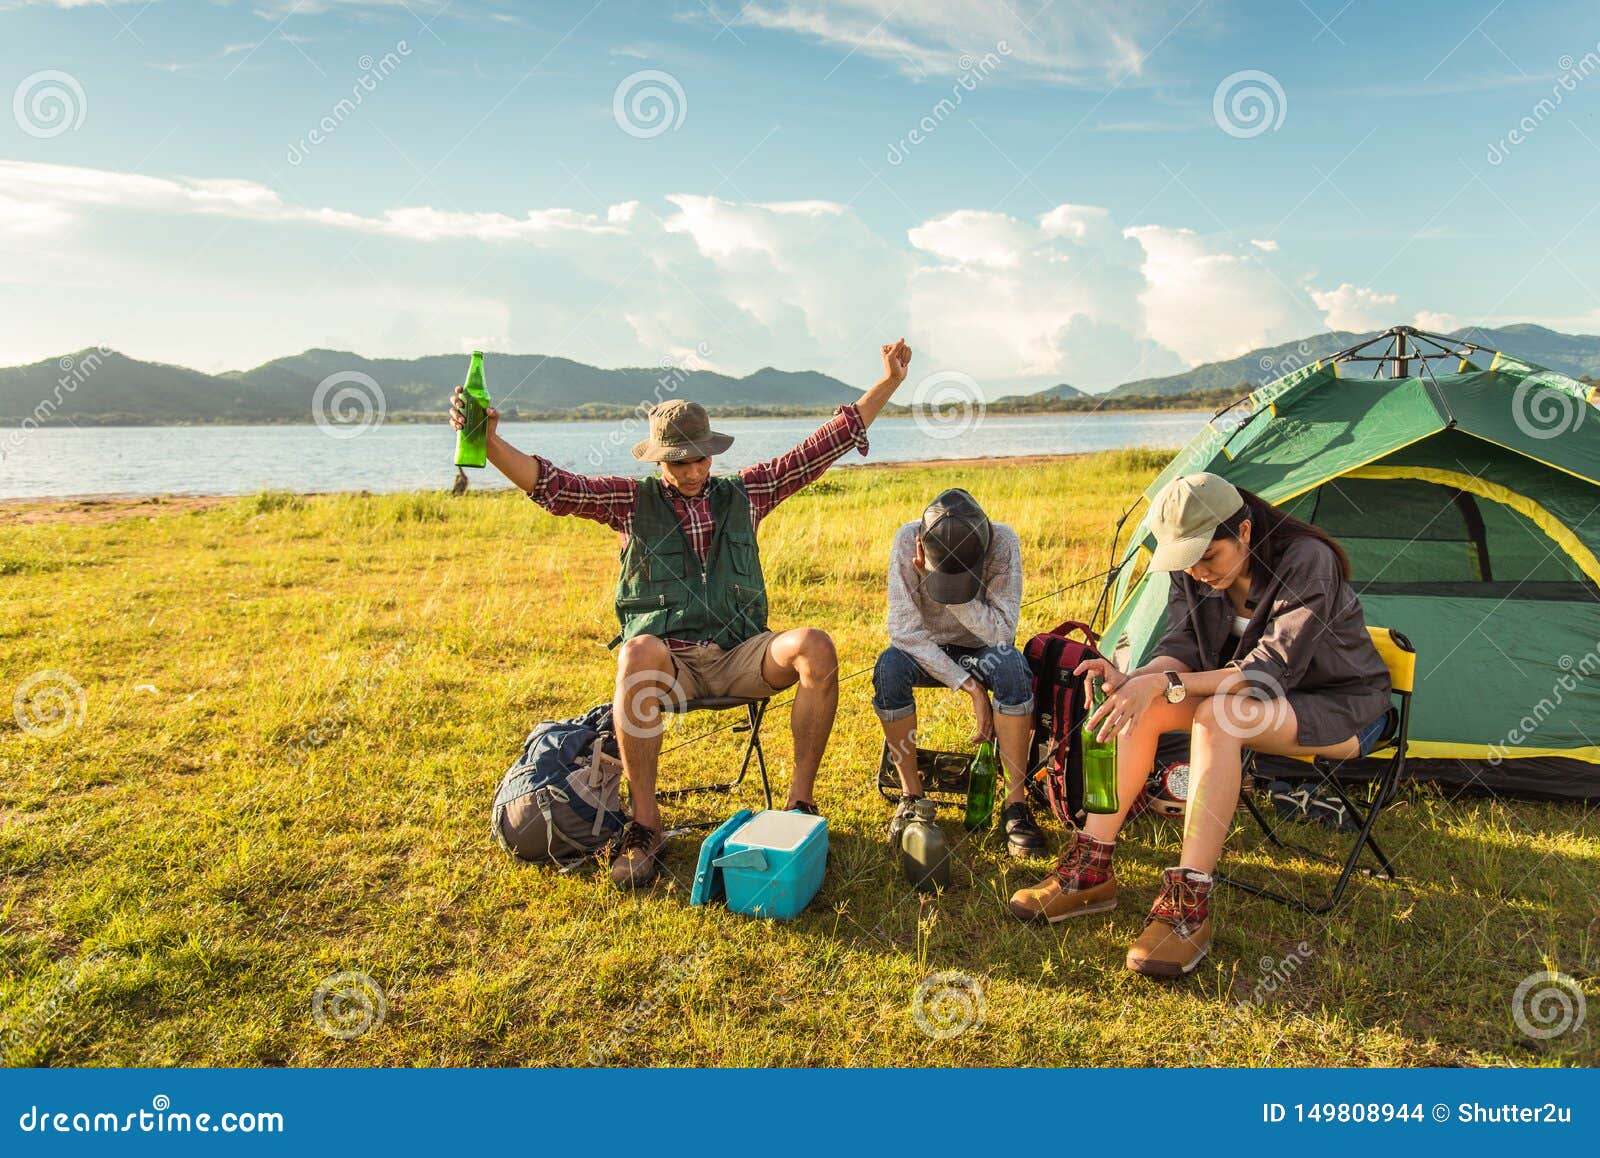 Пьяные пикники. Пьяные туристы в кемпинге. Турист на лугу.